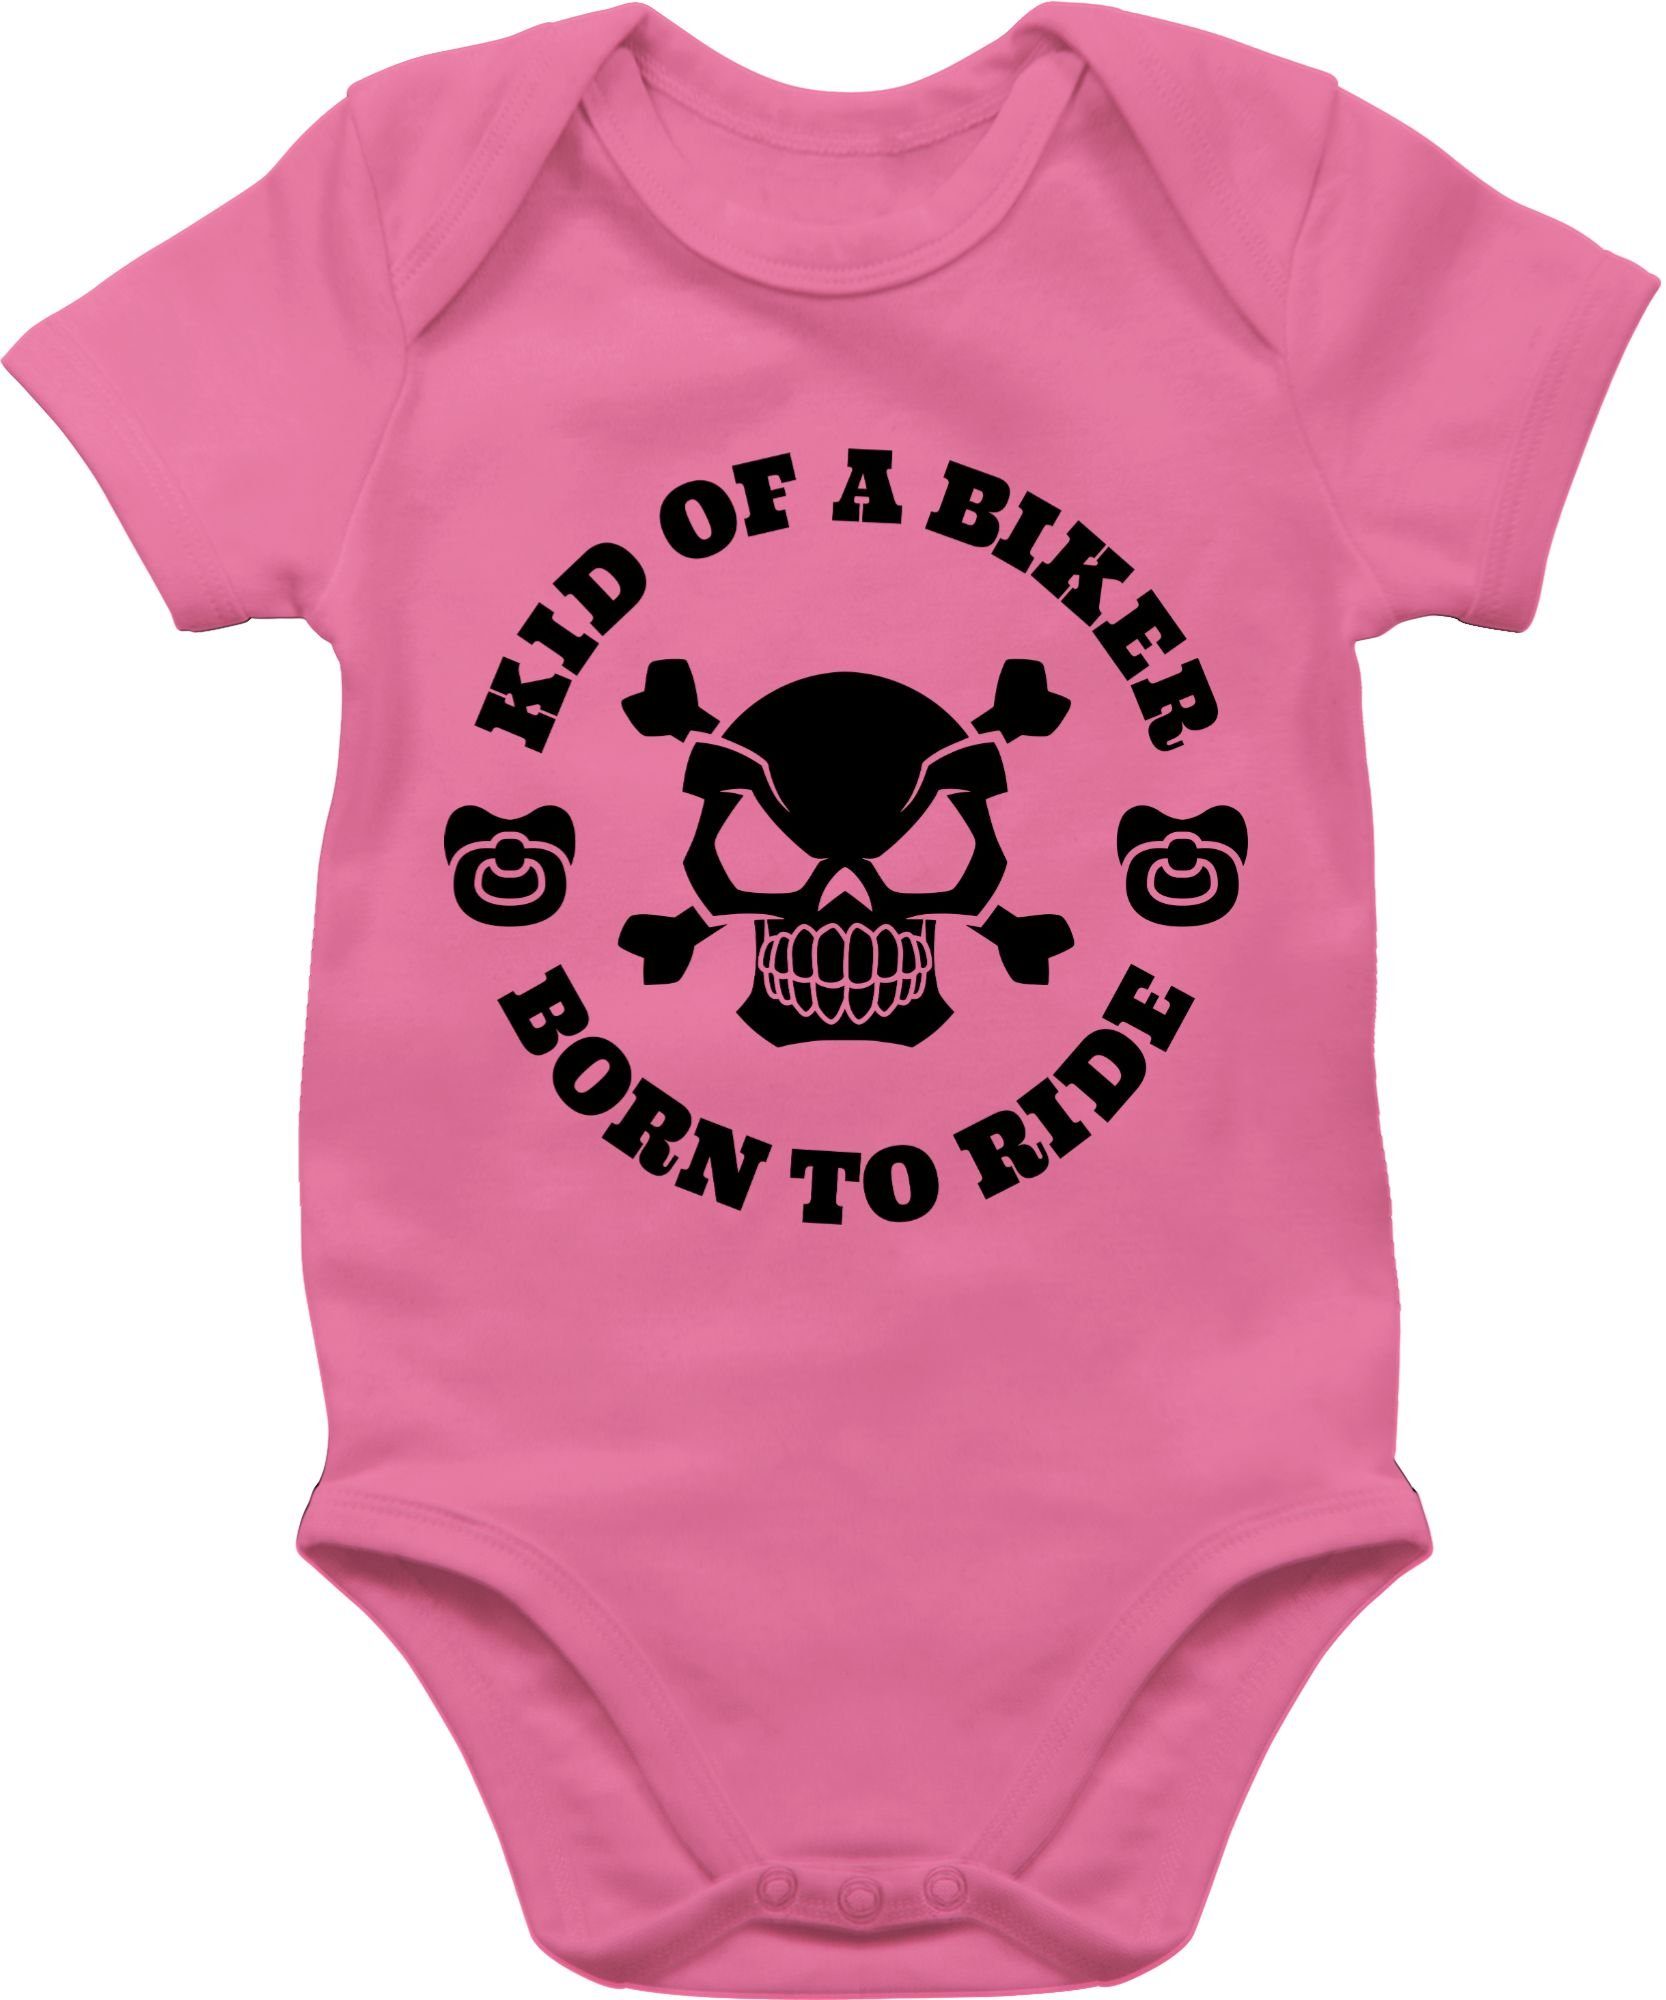 Shirtracer Shirtbody Kid of a biker born to ride mit Schnuller schwarz Sprüche Baby 2 Pink